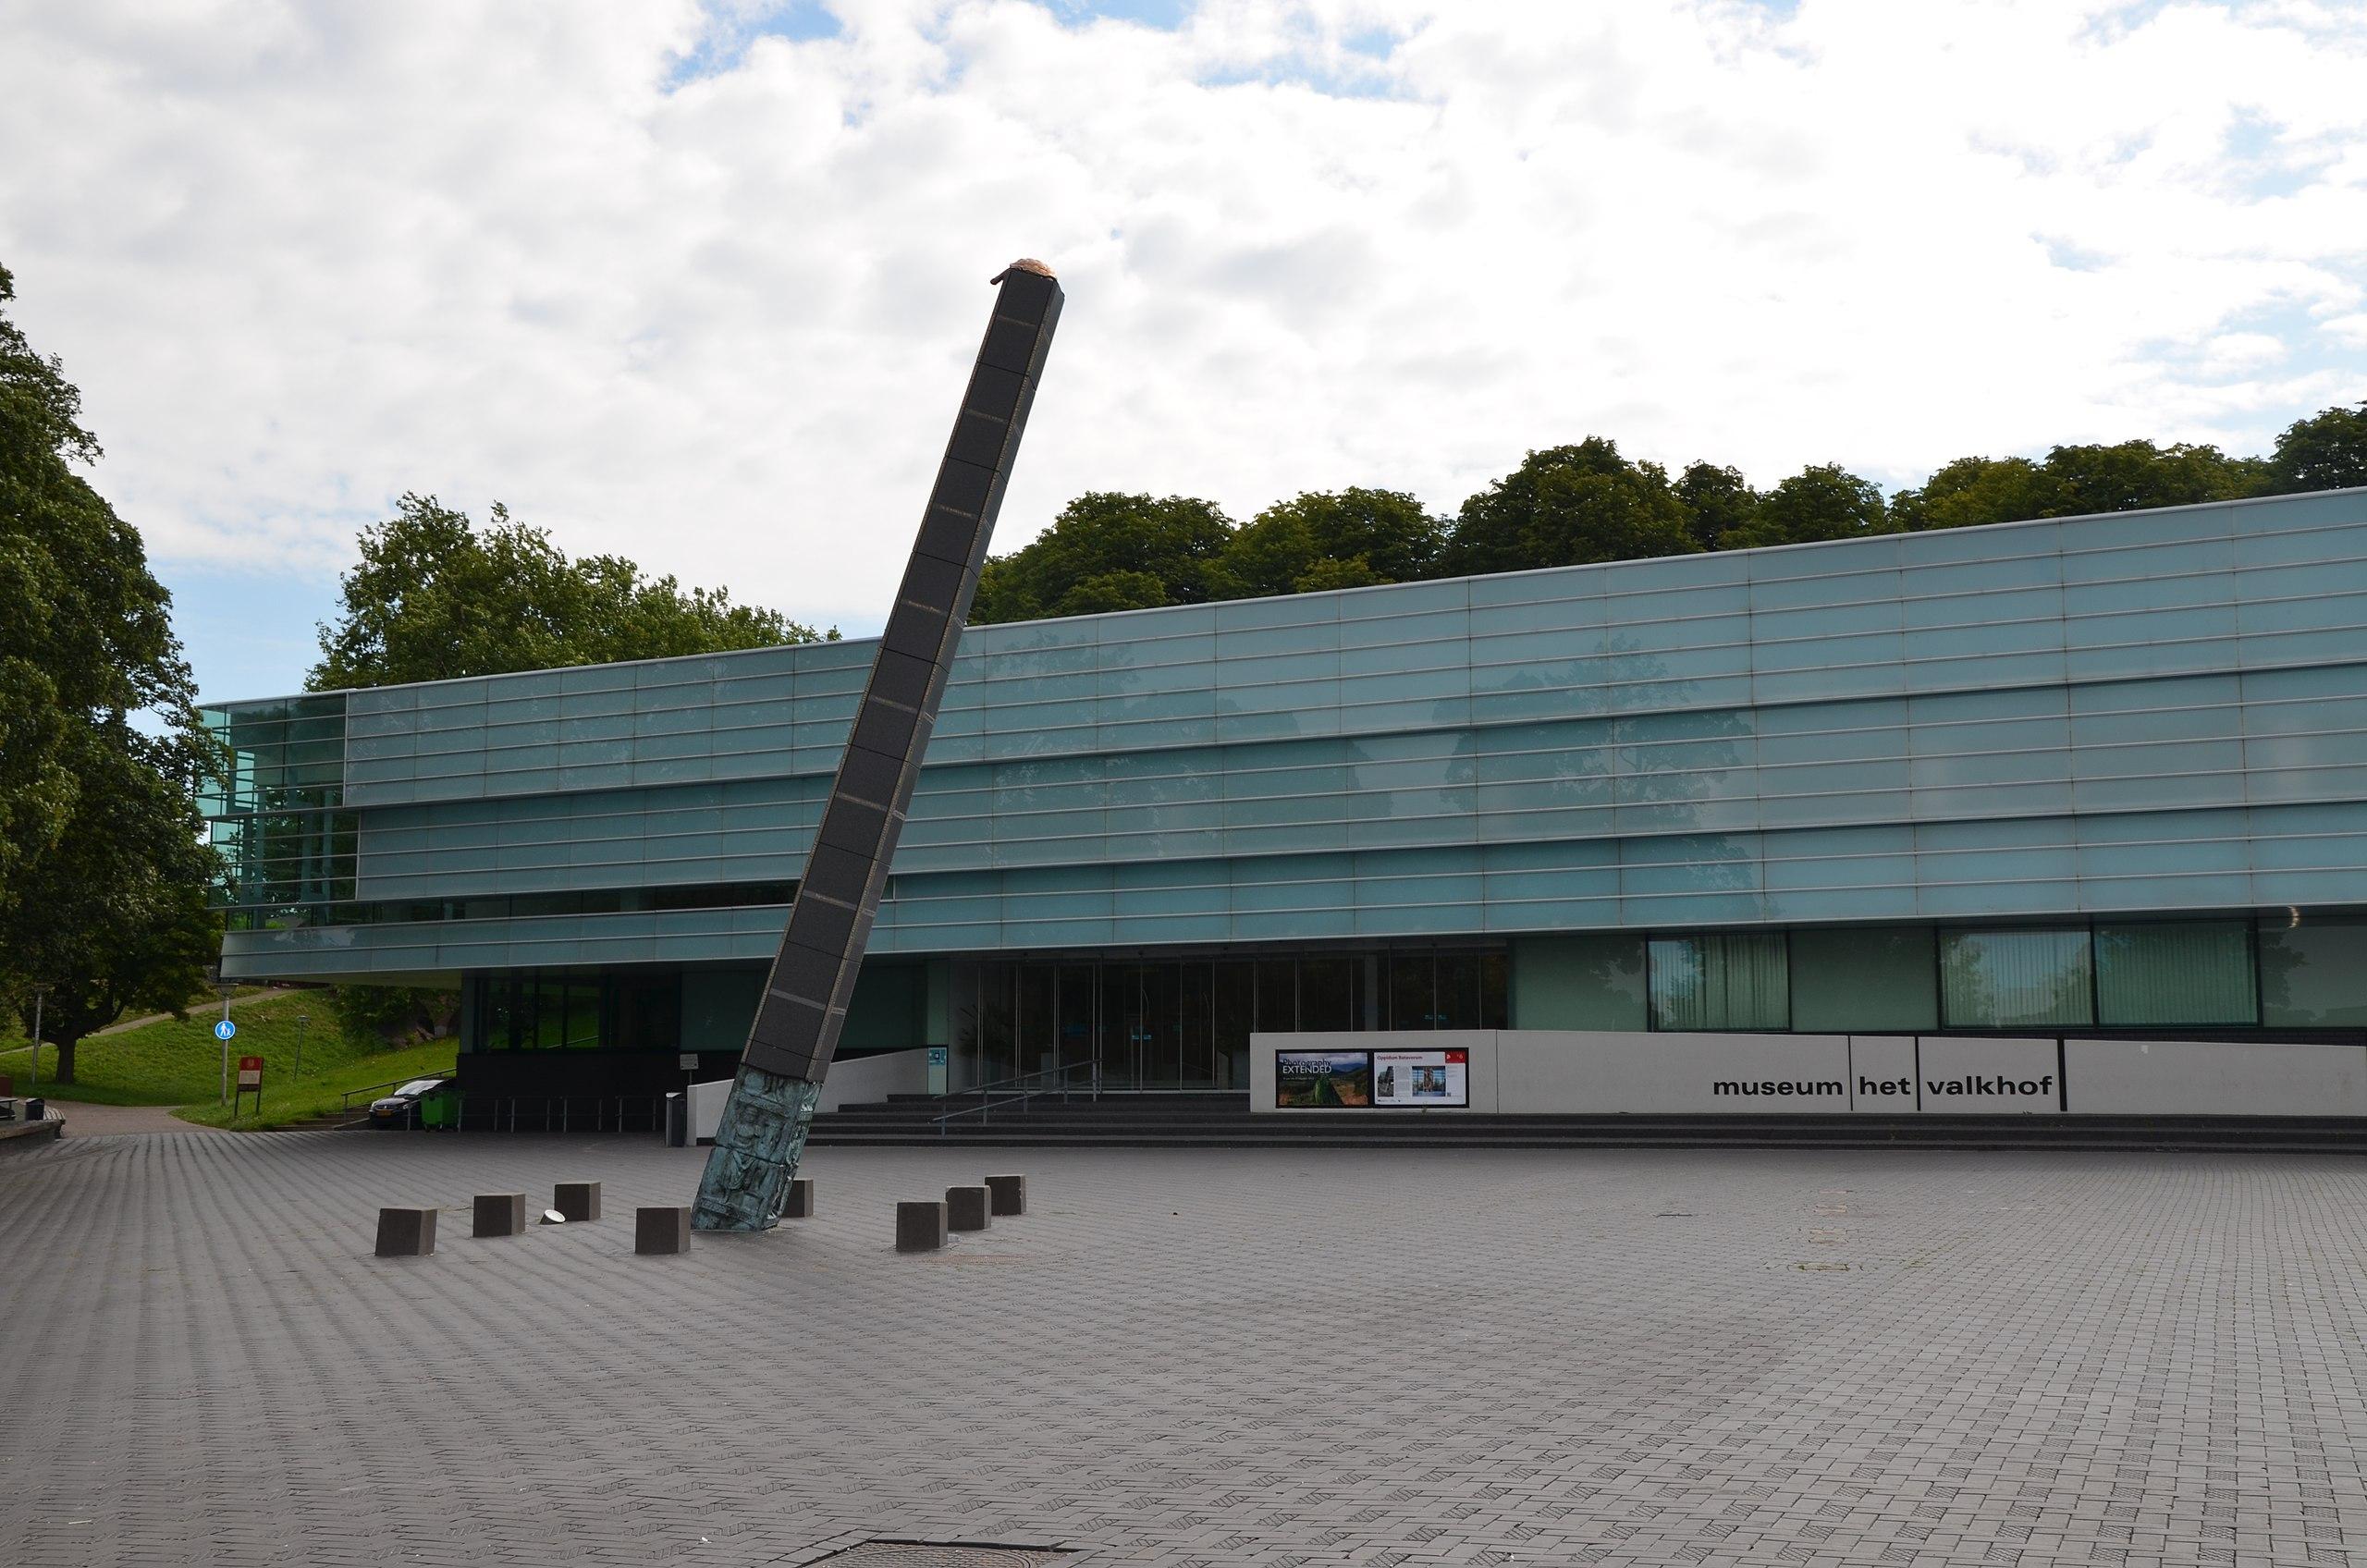 Ναϊμέχεν - Μουσείο Τέχνης και Αρχαιολογίας «Φάλκοφ»2db